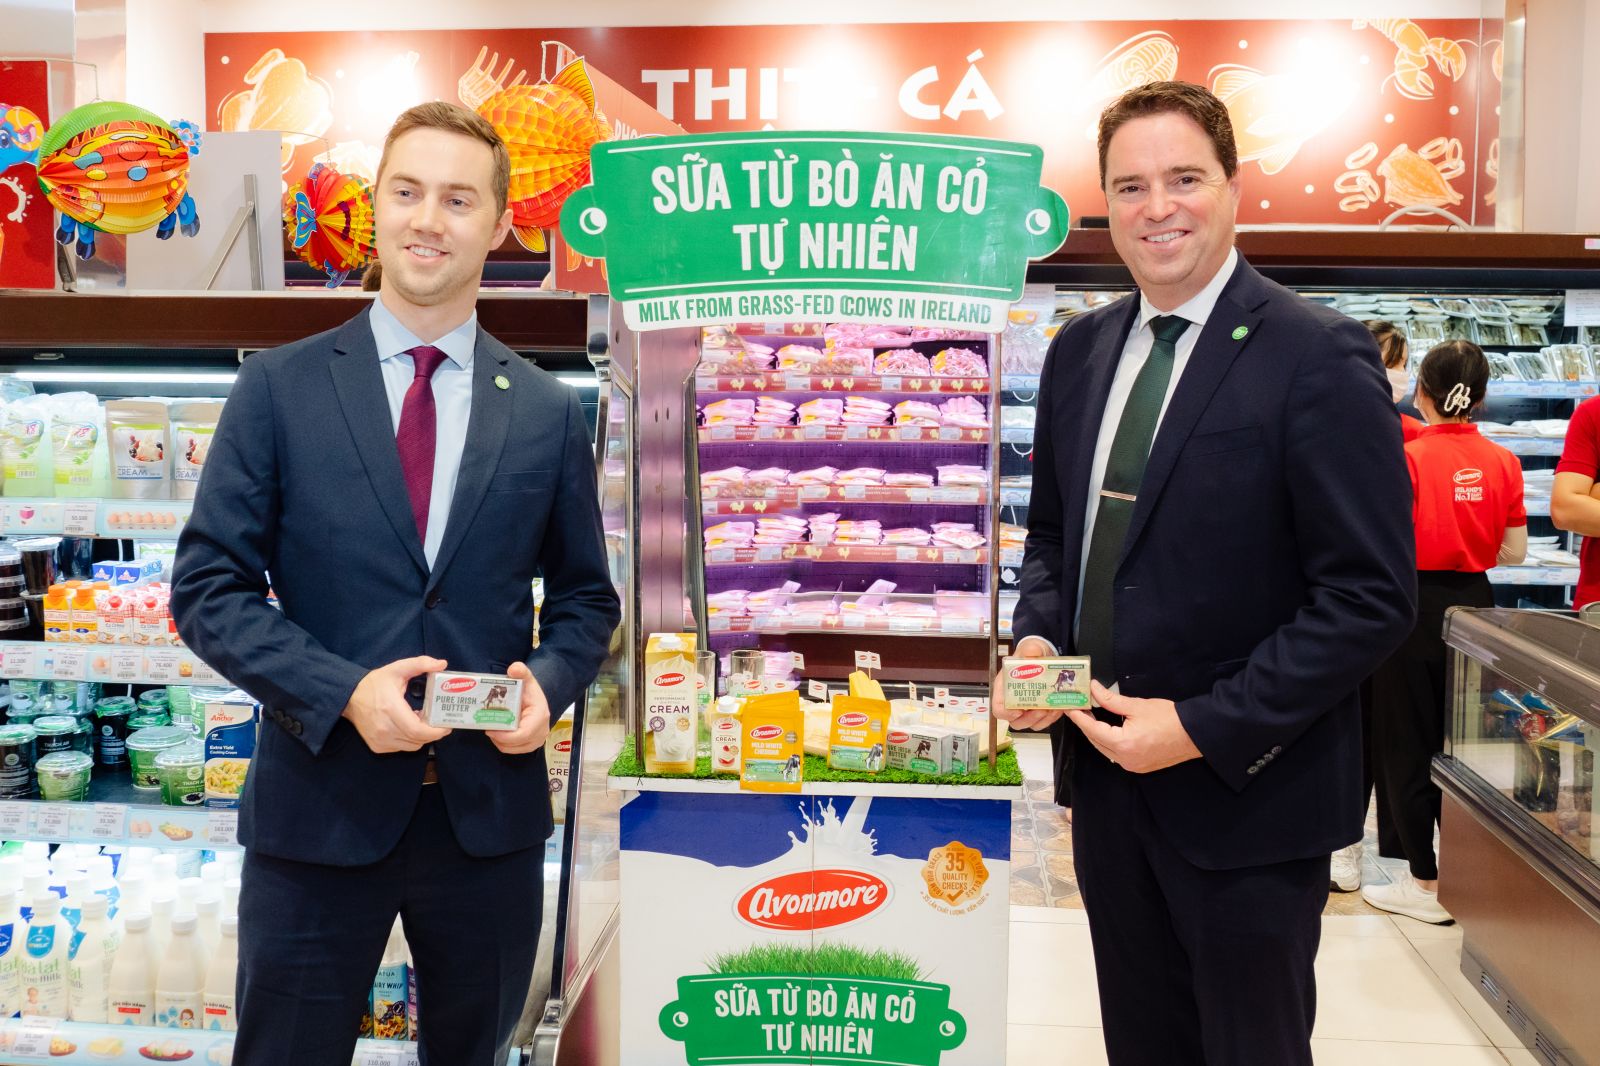 Cơ quan Thực phẩm Ireland khởi động chiến lược kinh doanh tại Việt Nam